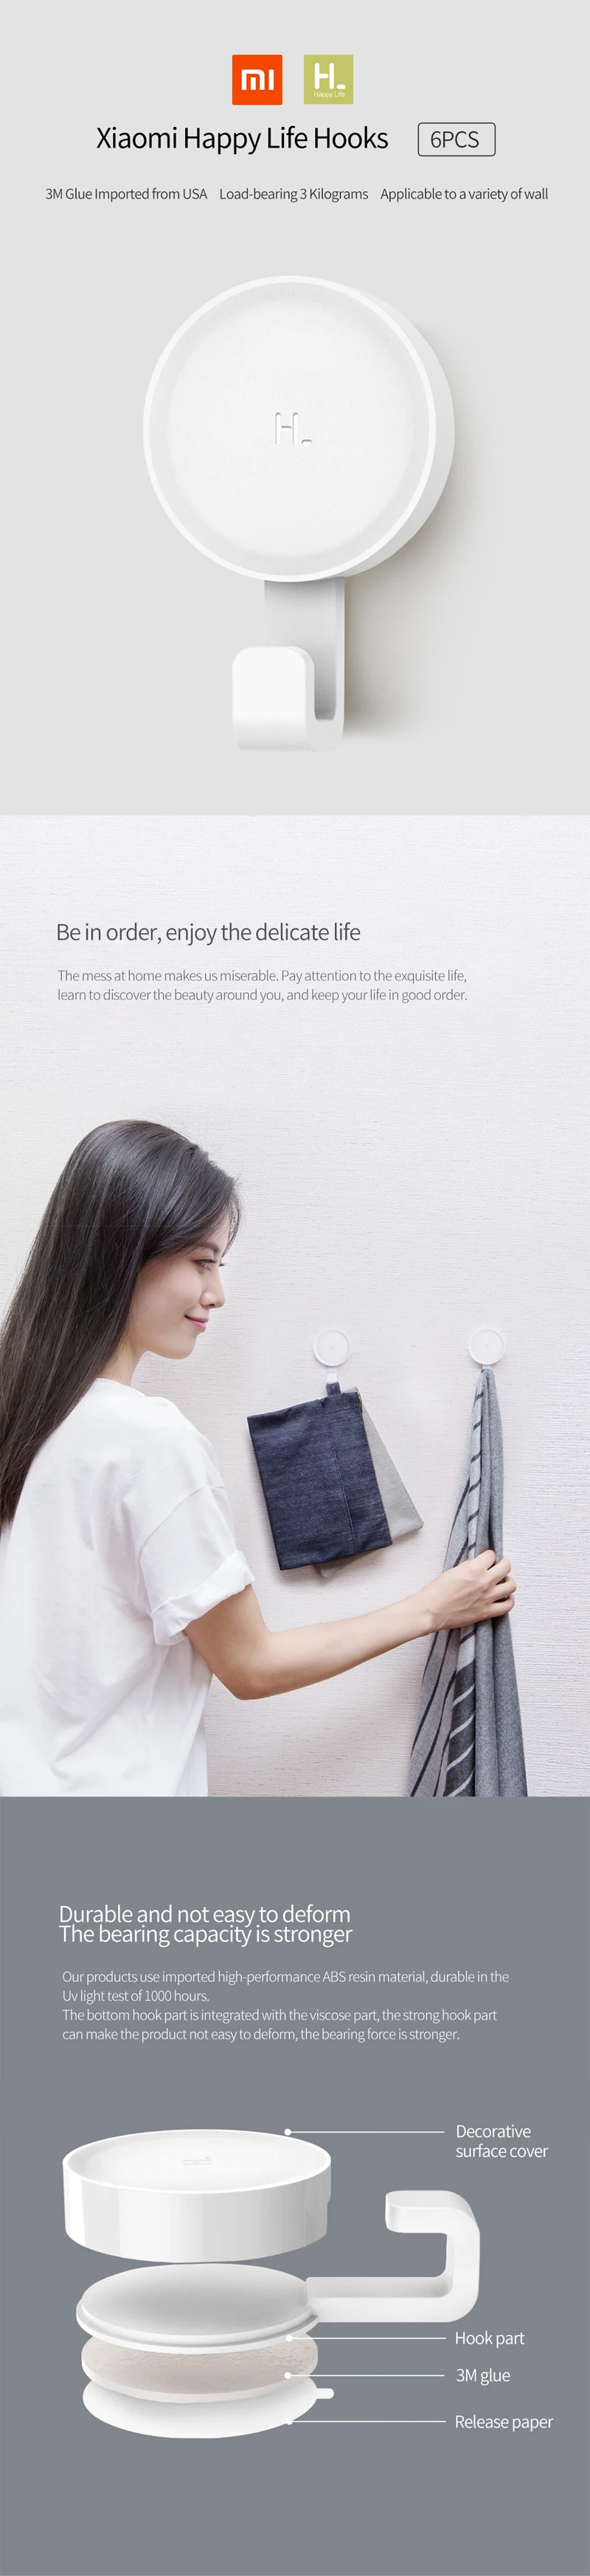 Xiaomi smart Mihome Happy Life белый крючок 6 шт. подходит для ванной спальни кухни стены 3 кг Максимальная нагрузка для xiaomi life